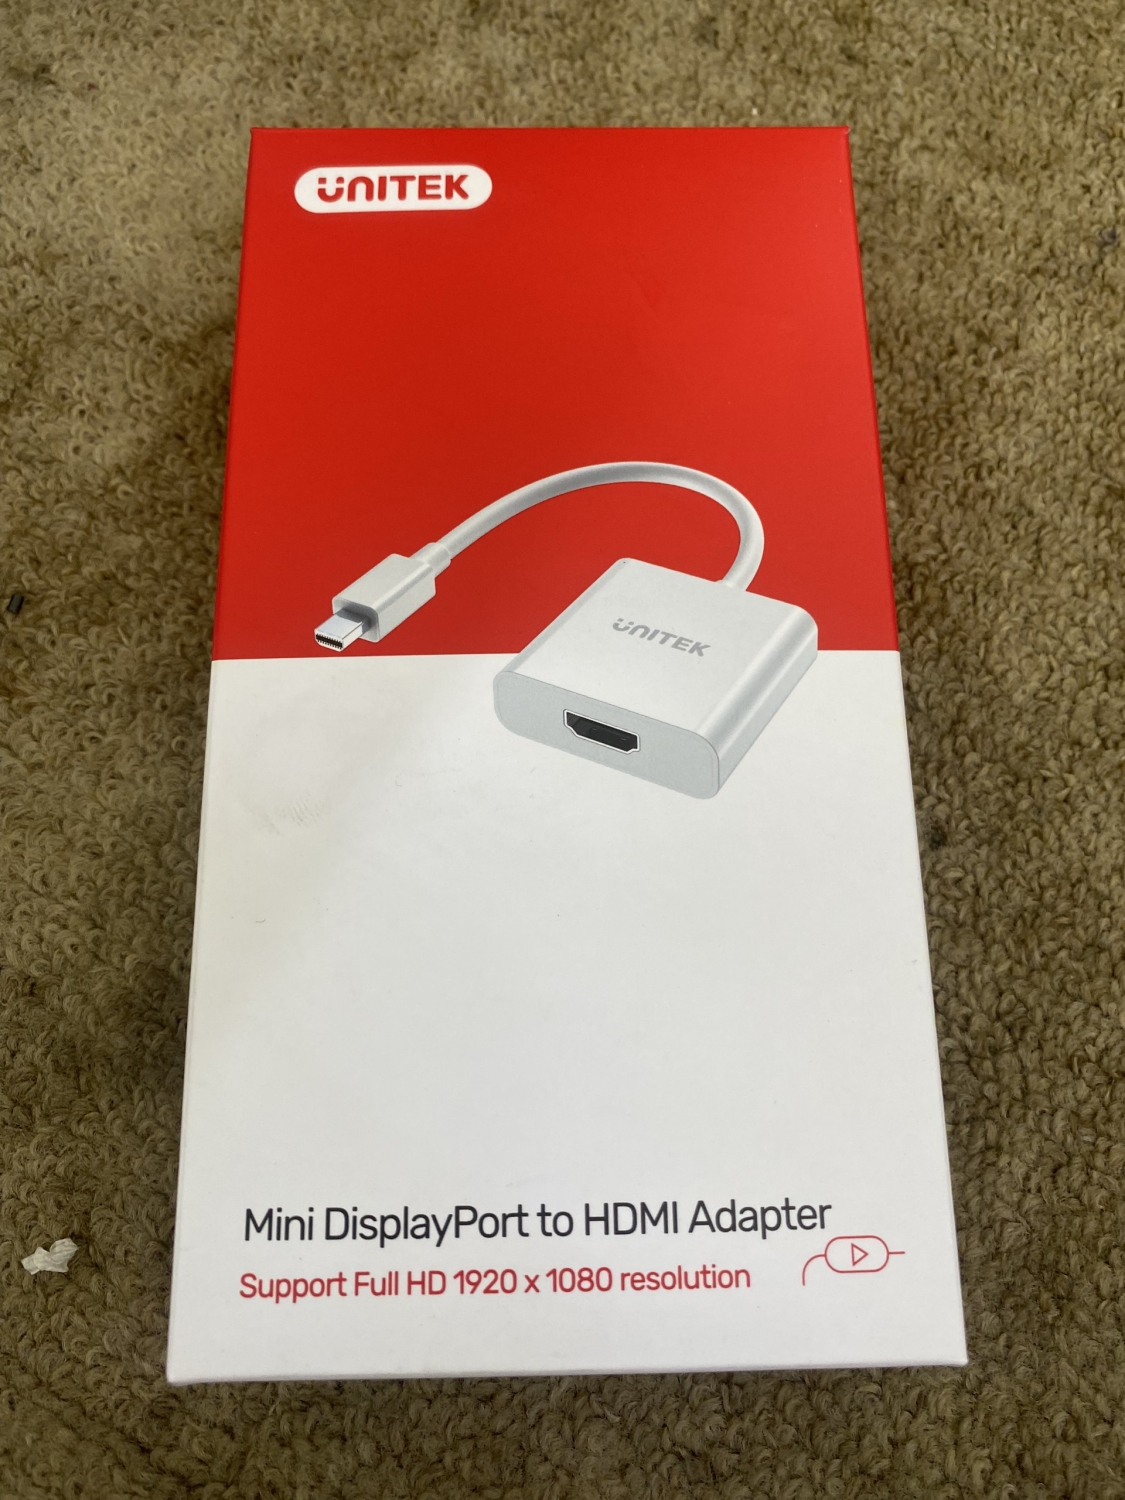 Mini displayport to HDMI Adapter unitek